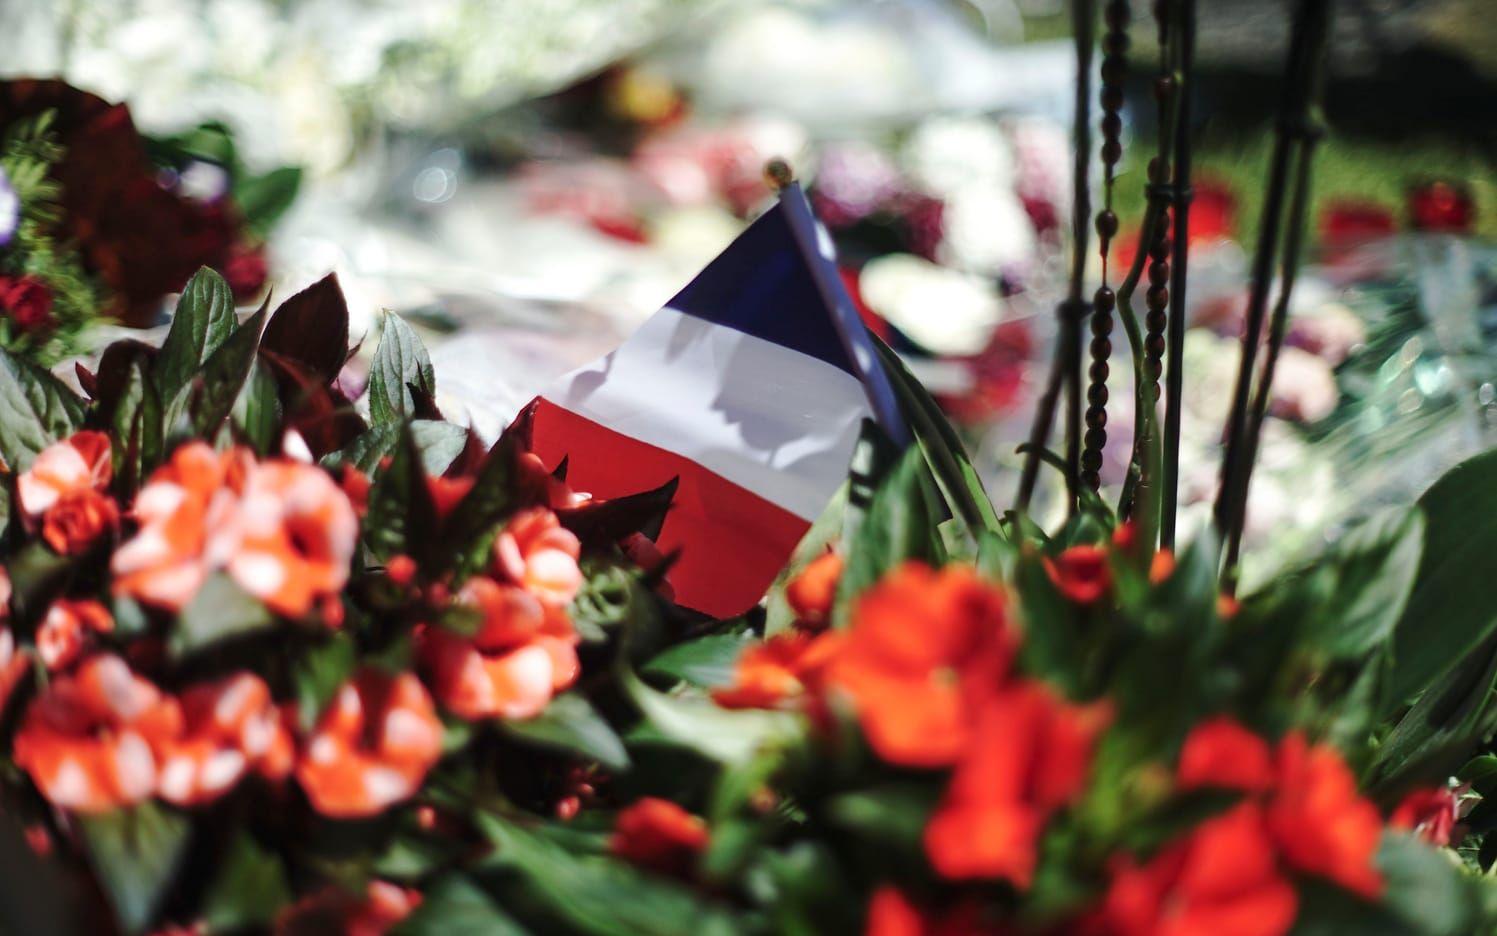 Blommor och en fransk flagga är kvarlämnade på gatan där de fruktansvärda scenerna utspelade sig. Foto: TT